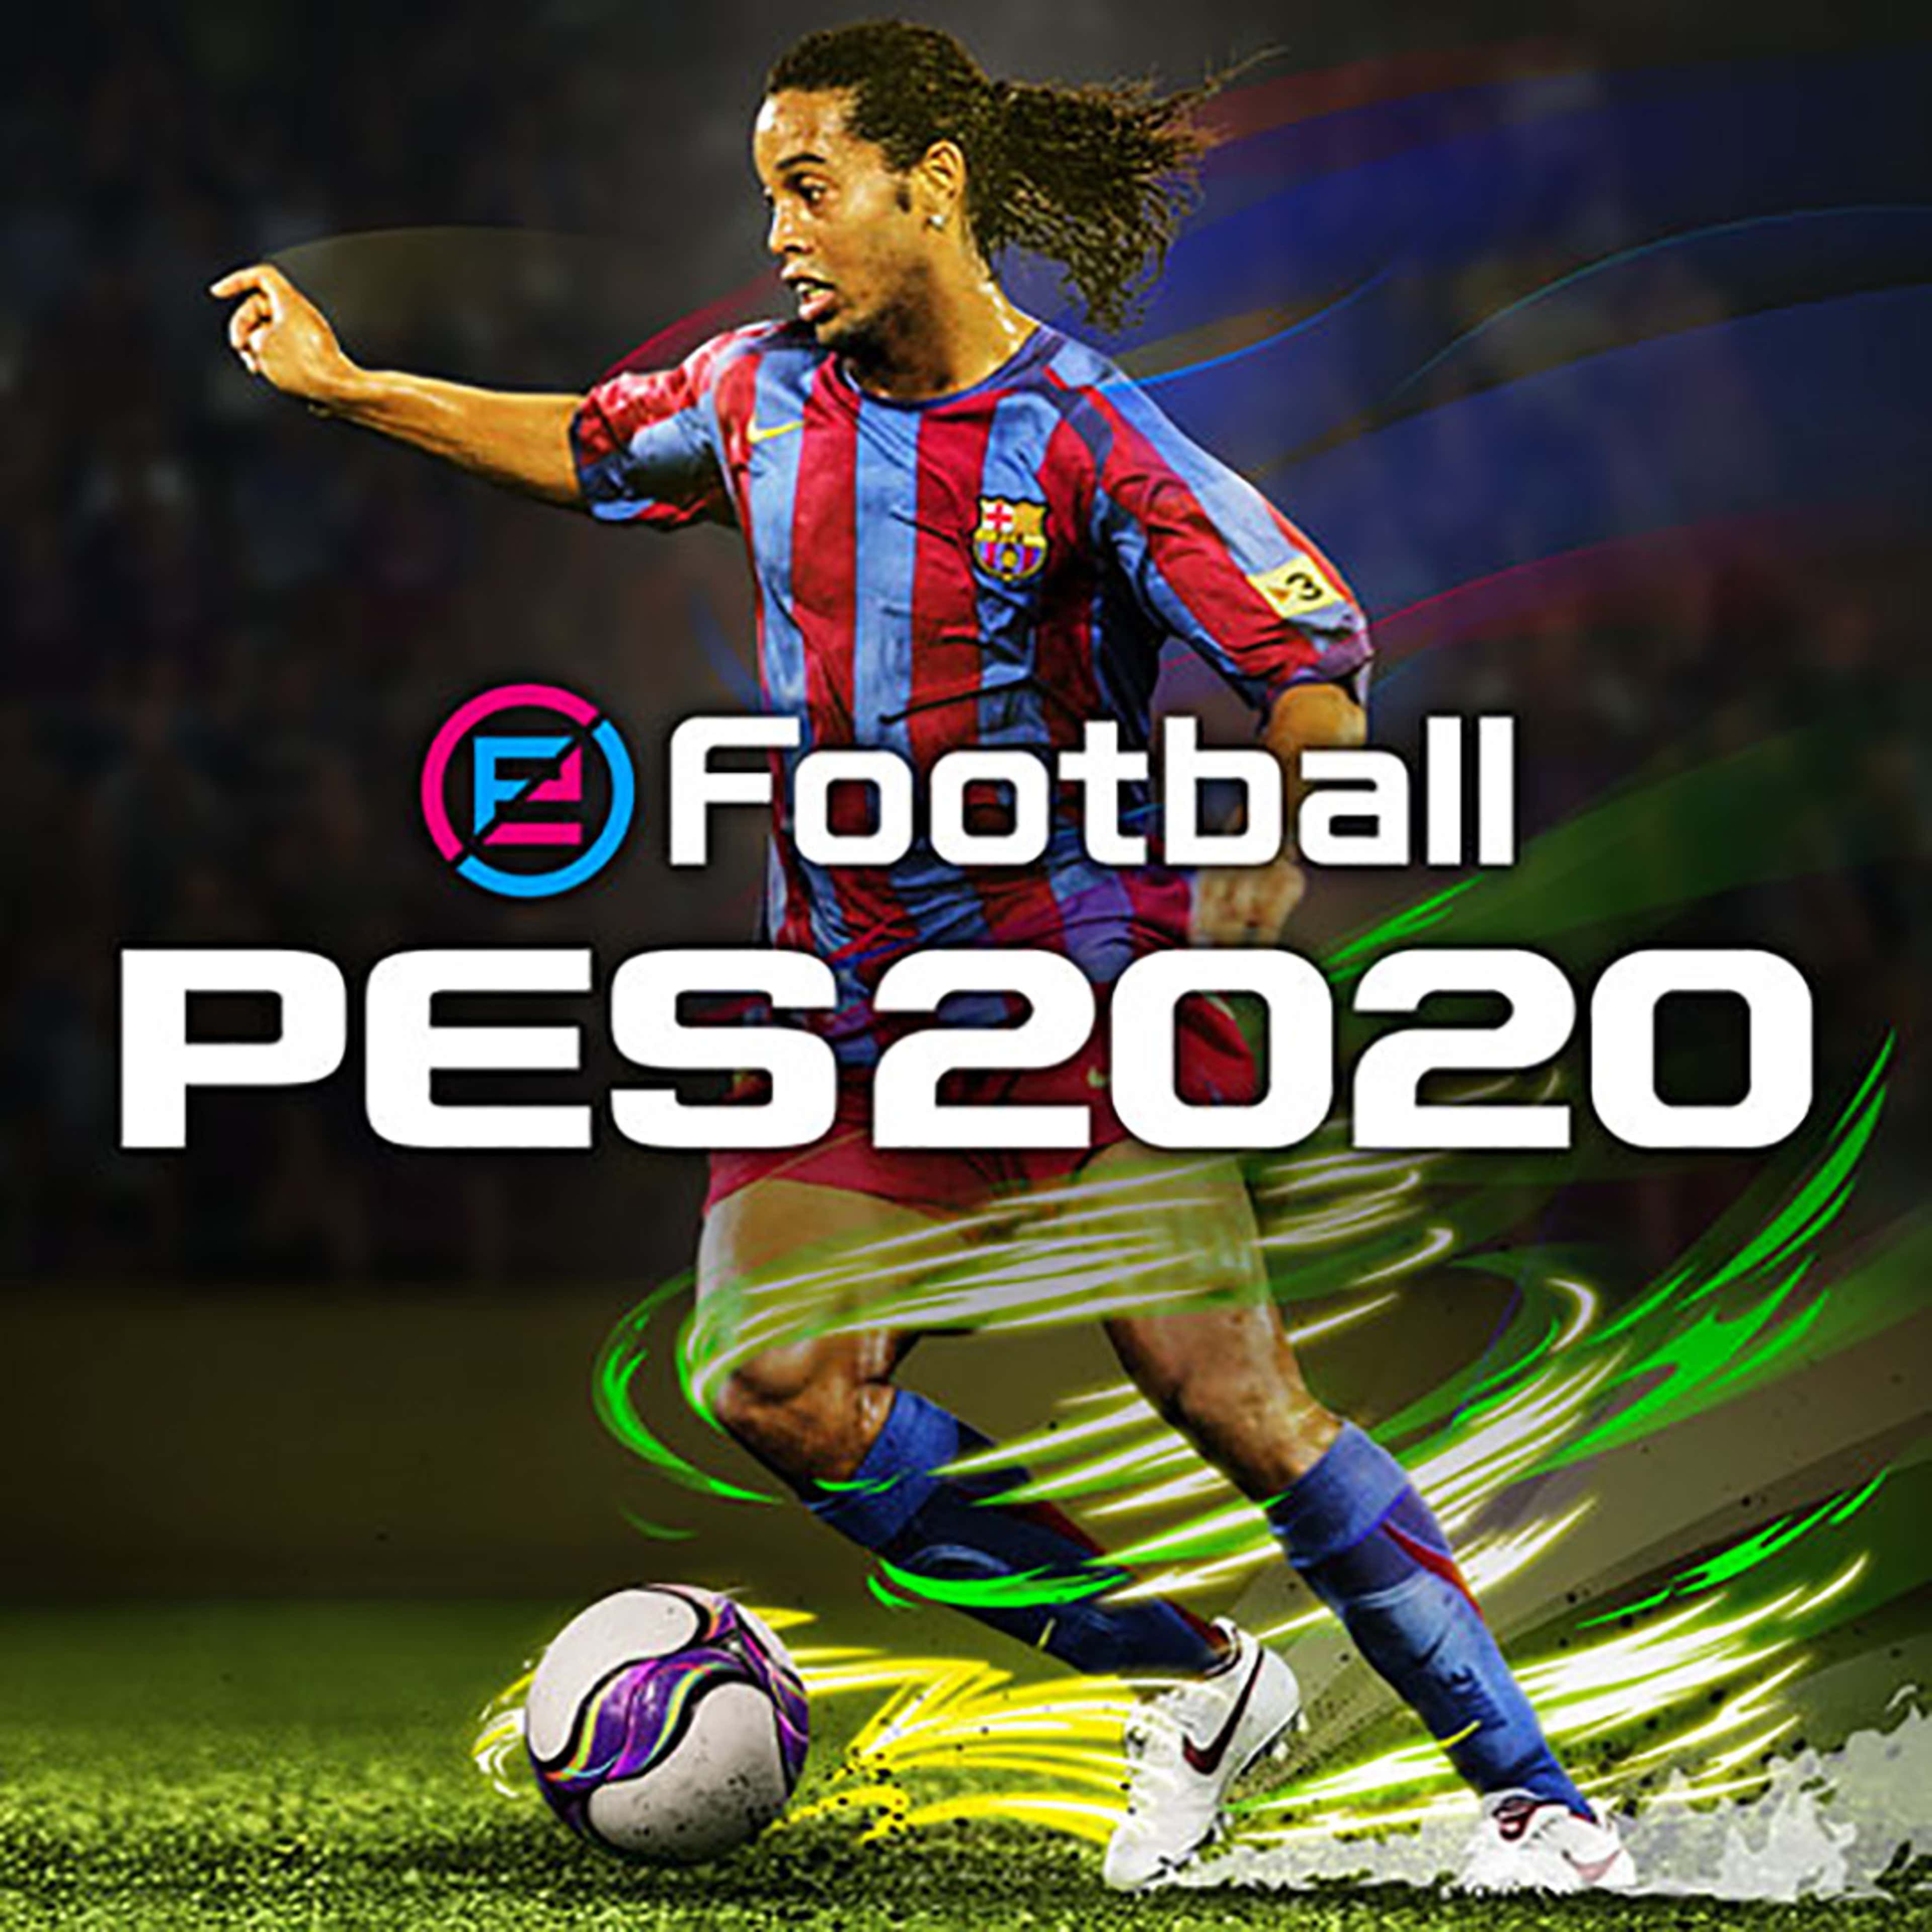 Images e-Football PES 2020